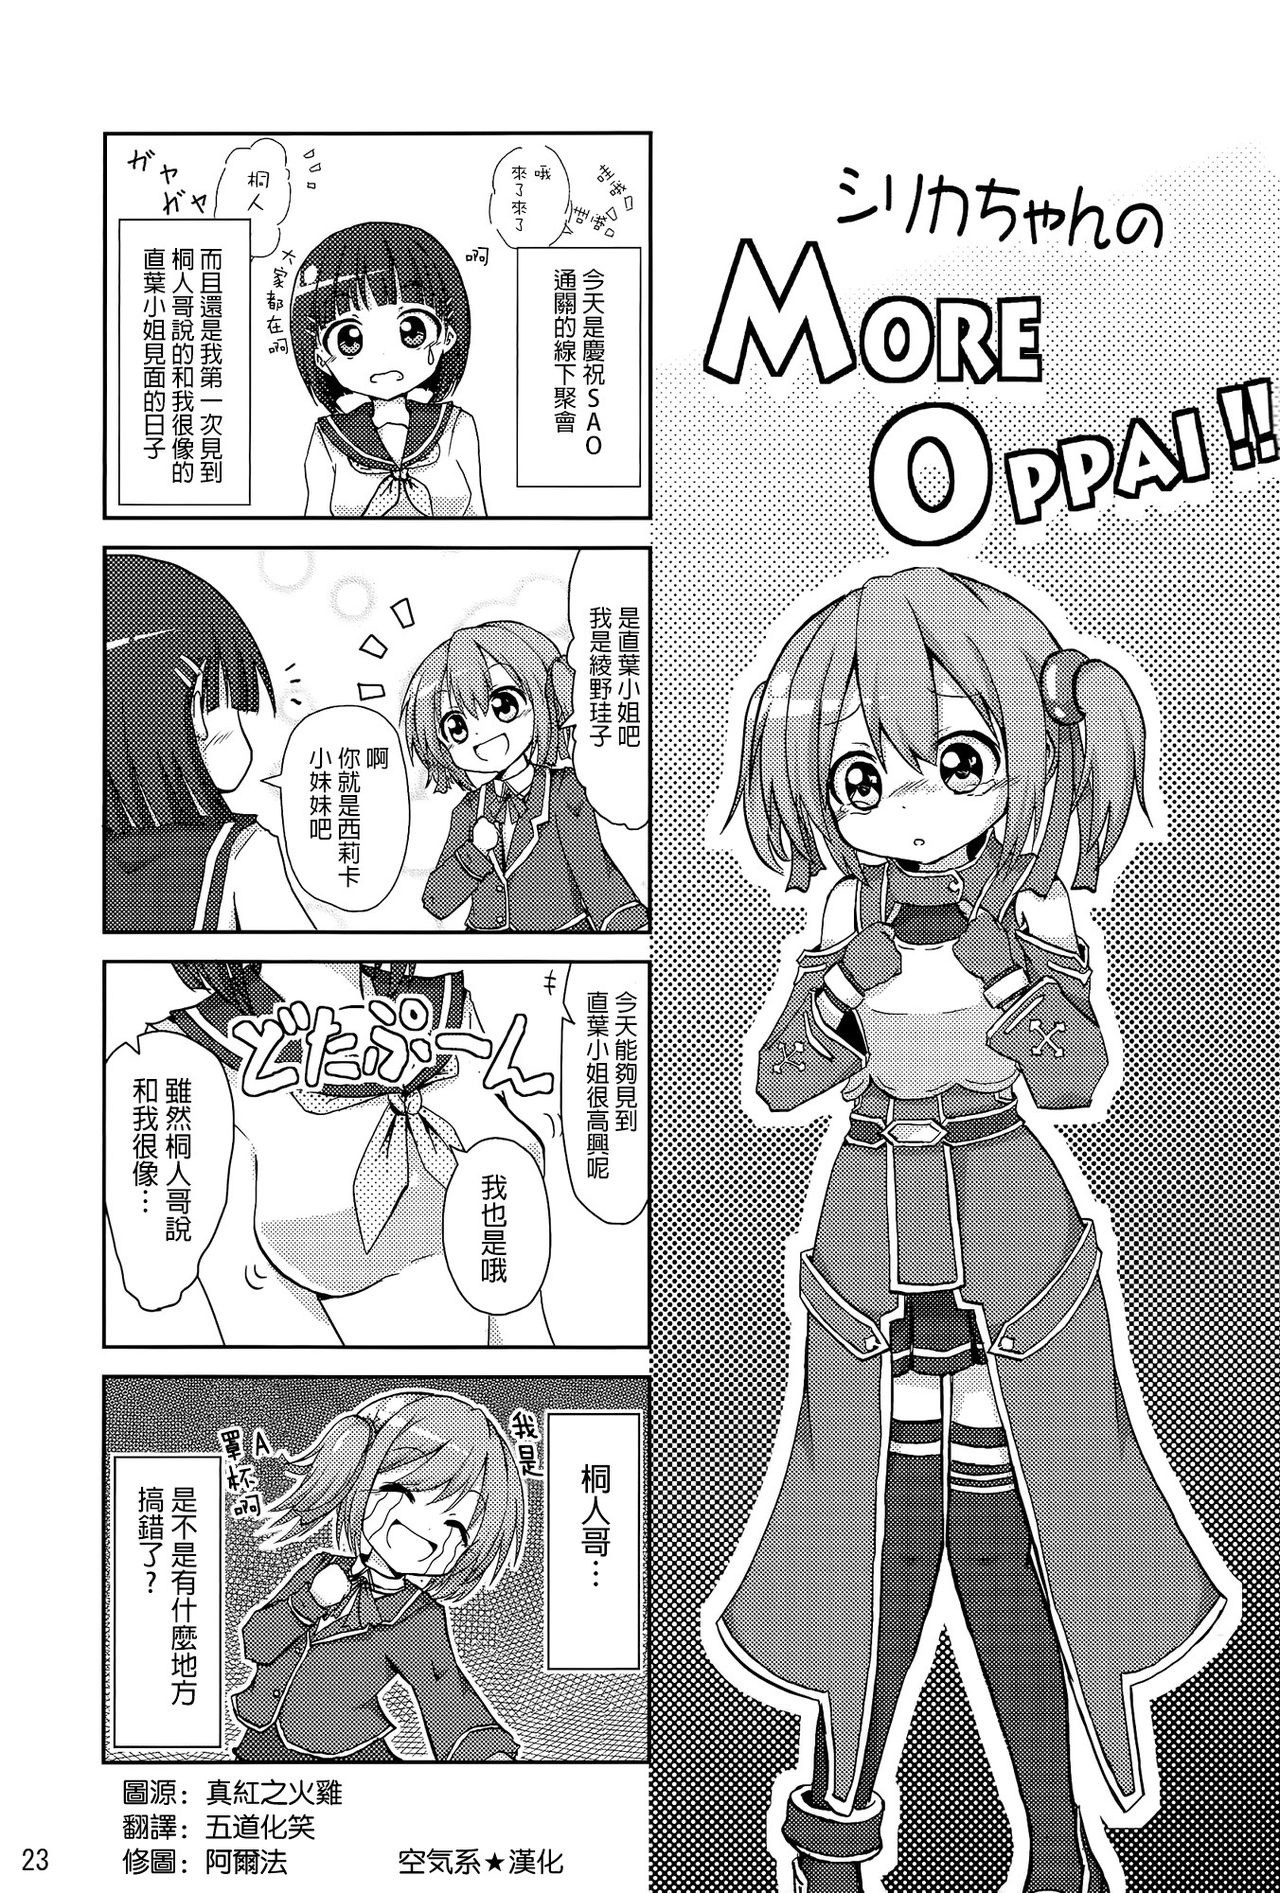 Silica chan kawaii 2 hentai manga picture 21